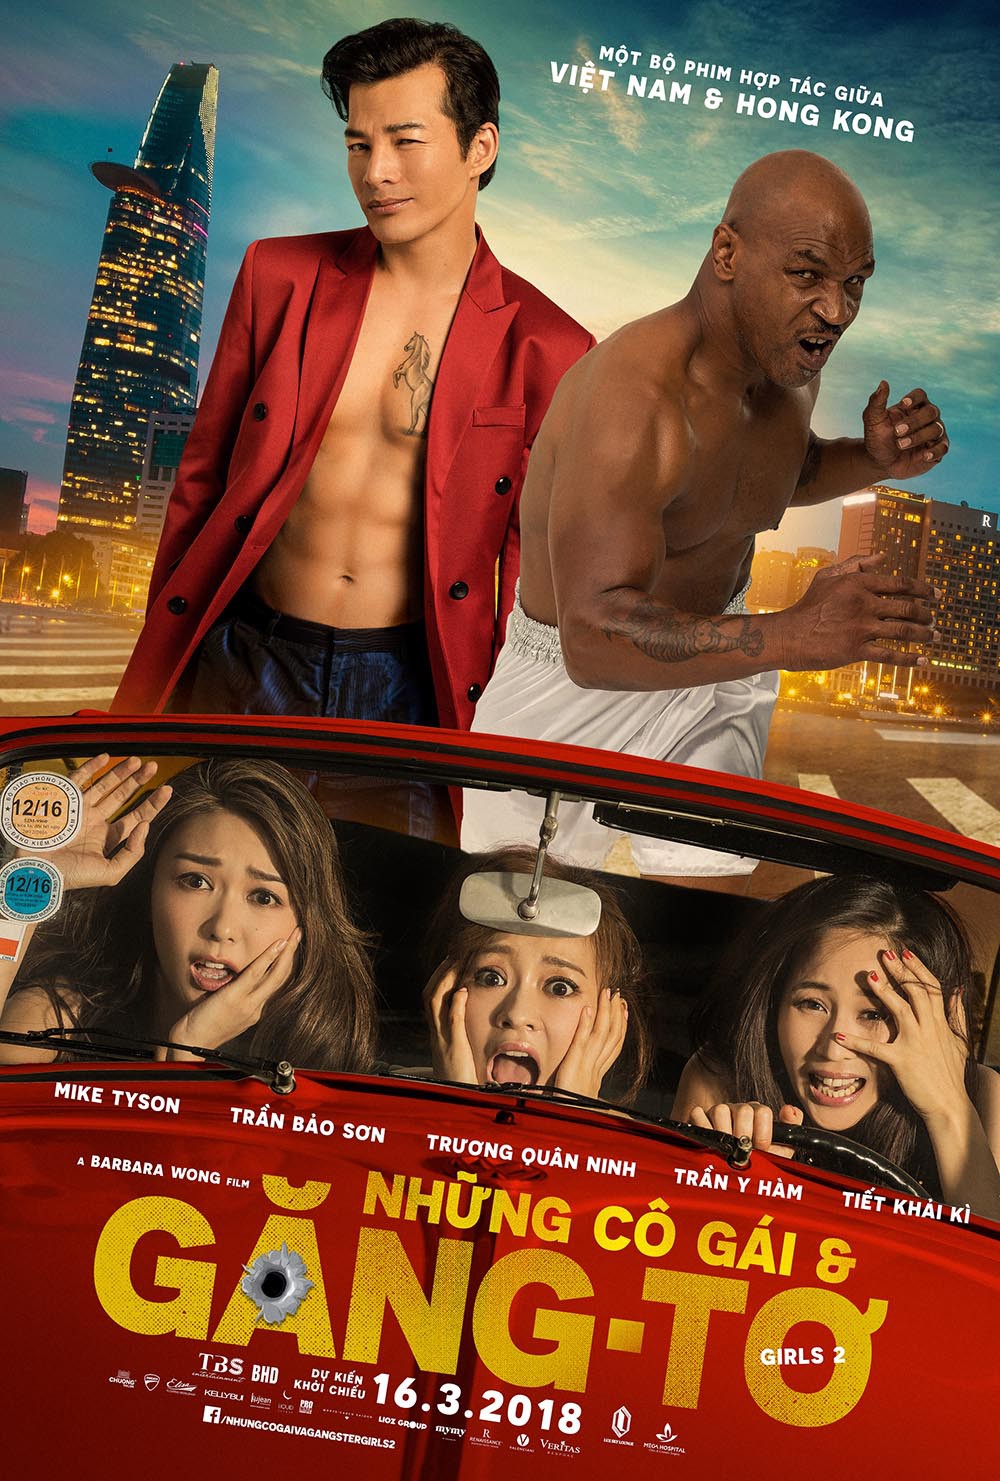 Trần Bảo Sơn và Mike Tyson cởi áo khoe thân bên dàn mỹ nhân Hong Kong trong Girls 2 - Ảnh 7.